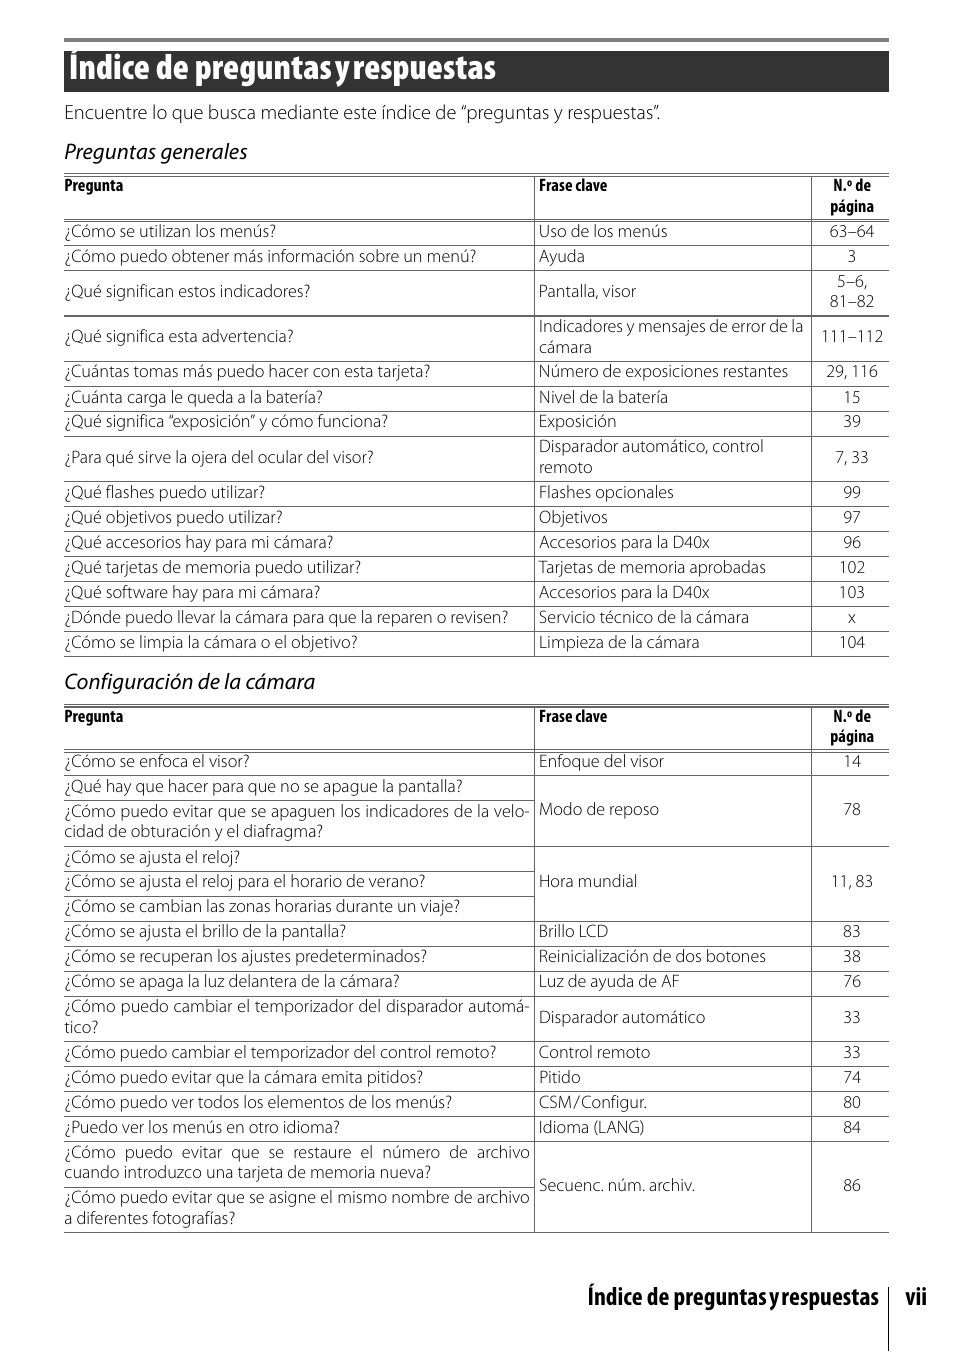 Preguntas y respuestas, Índice de preguntasyrespuestas, Índice de preguntasyrespuestas vii | Preguntas generales configuración de la cámara | Nikon D40X Manual del usuario | Página 9 / 139